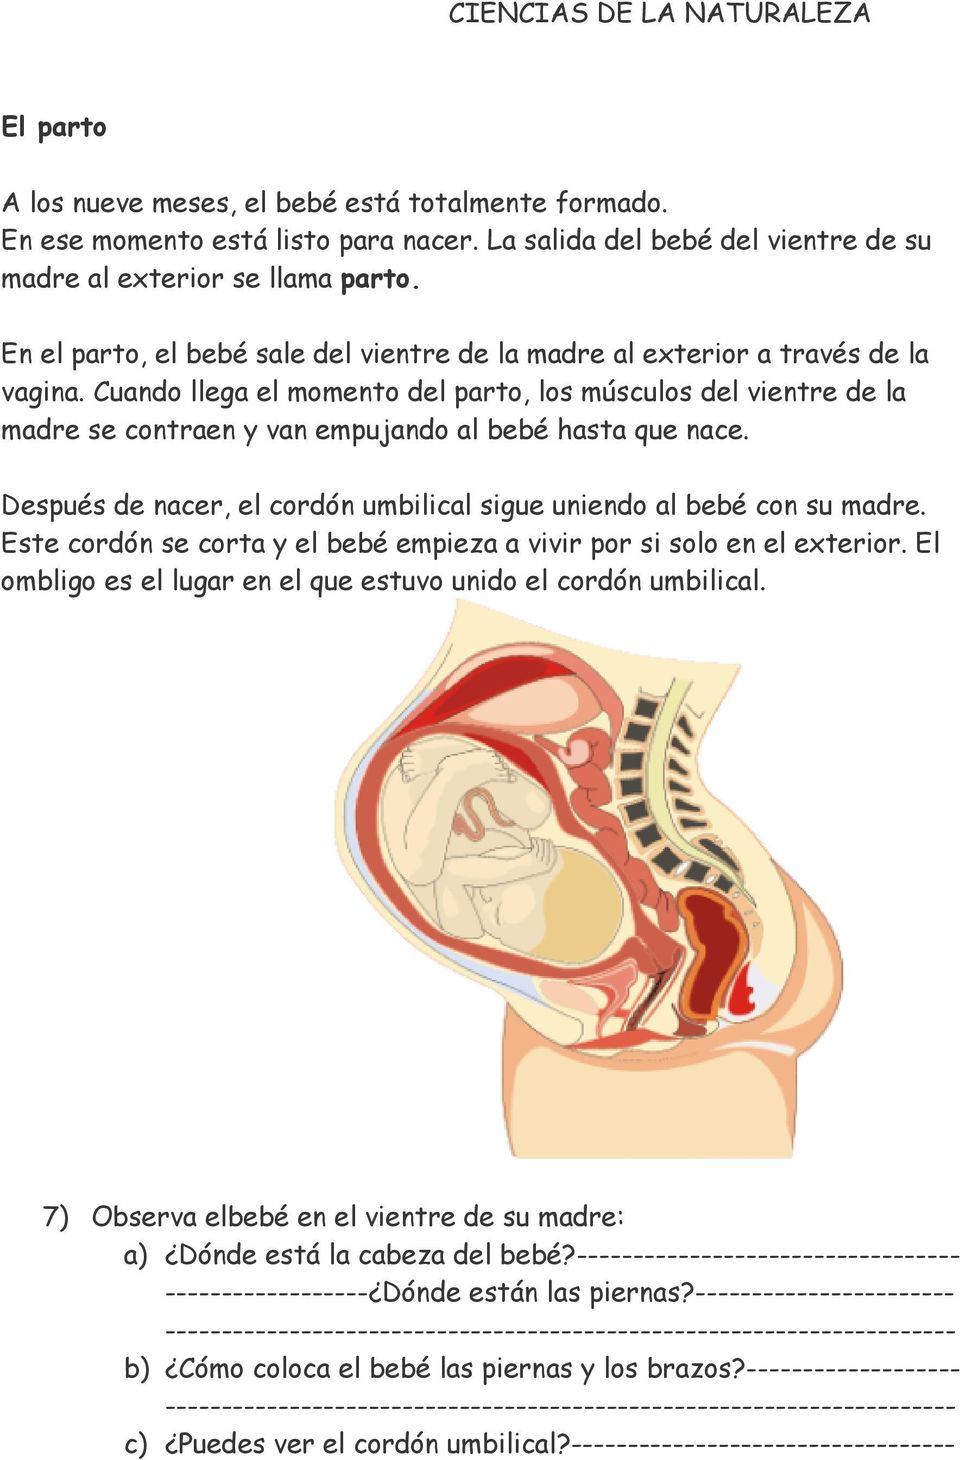 Cuando llega el momento del parto, los músculos del vientre de la madre se contraen y van empujando al bebé hasta que nace. Después de nacer, el cordón umbilical sigue uniendo al bebé con su madre.